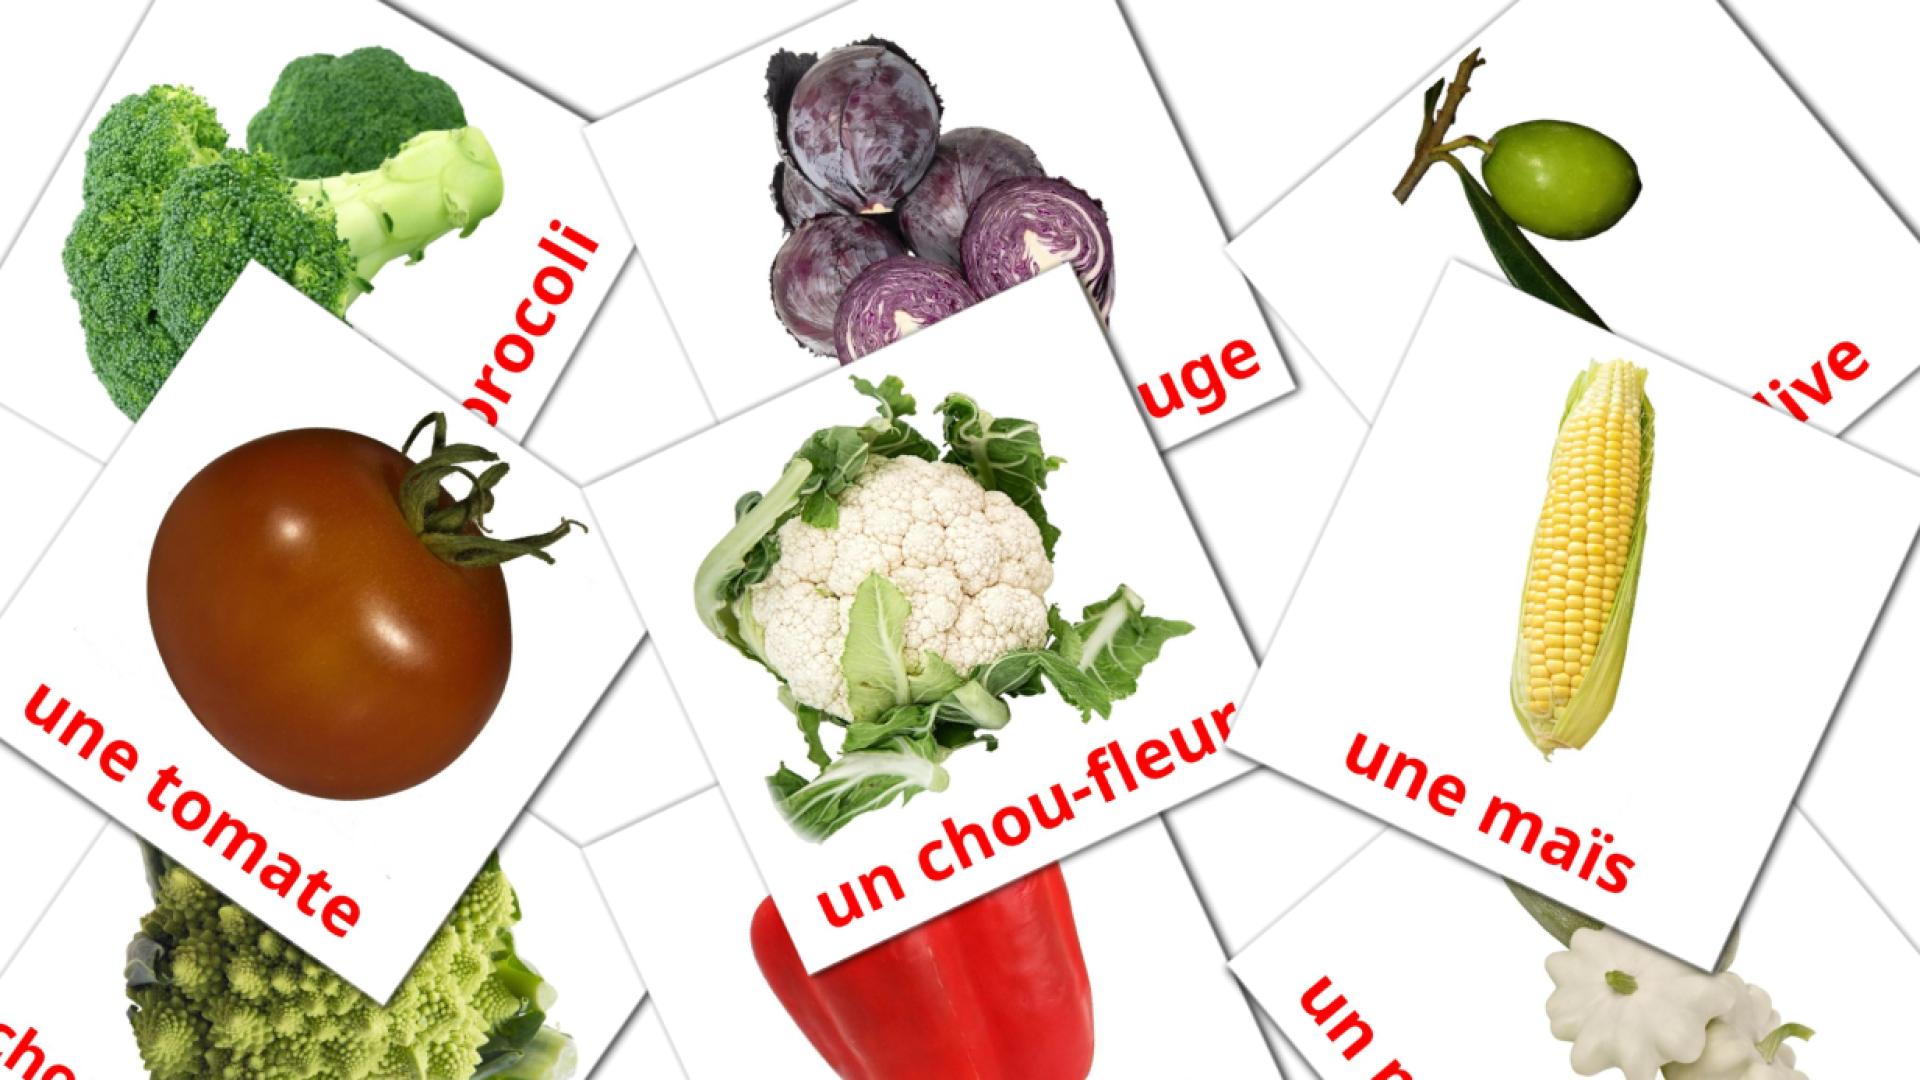 Les Légumes flashcards